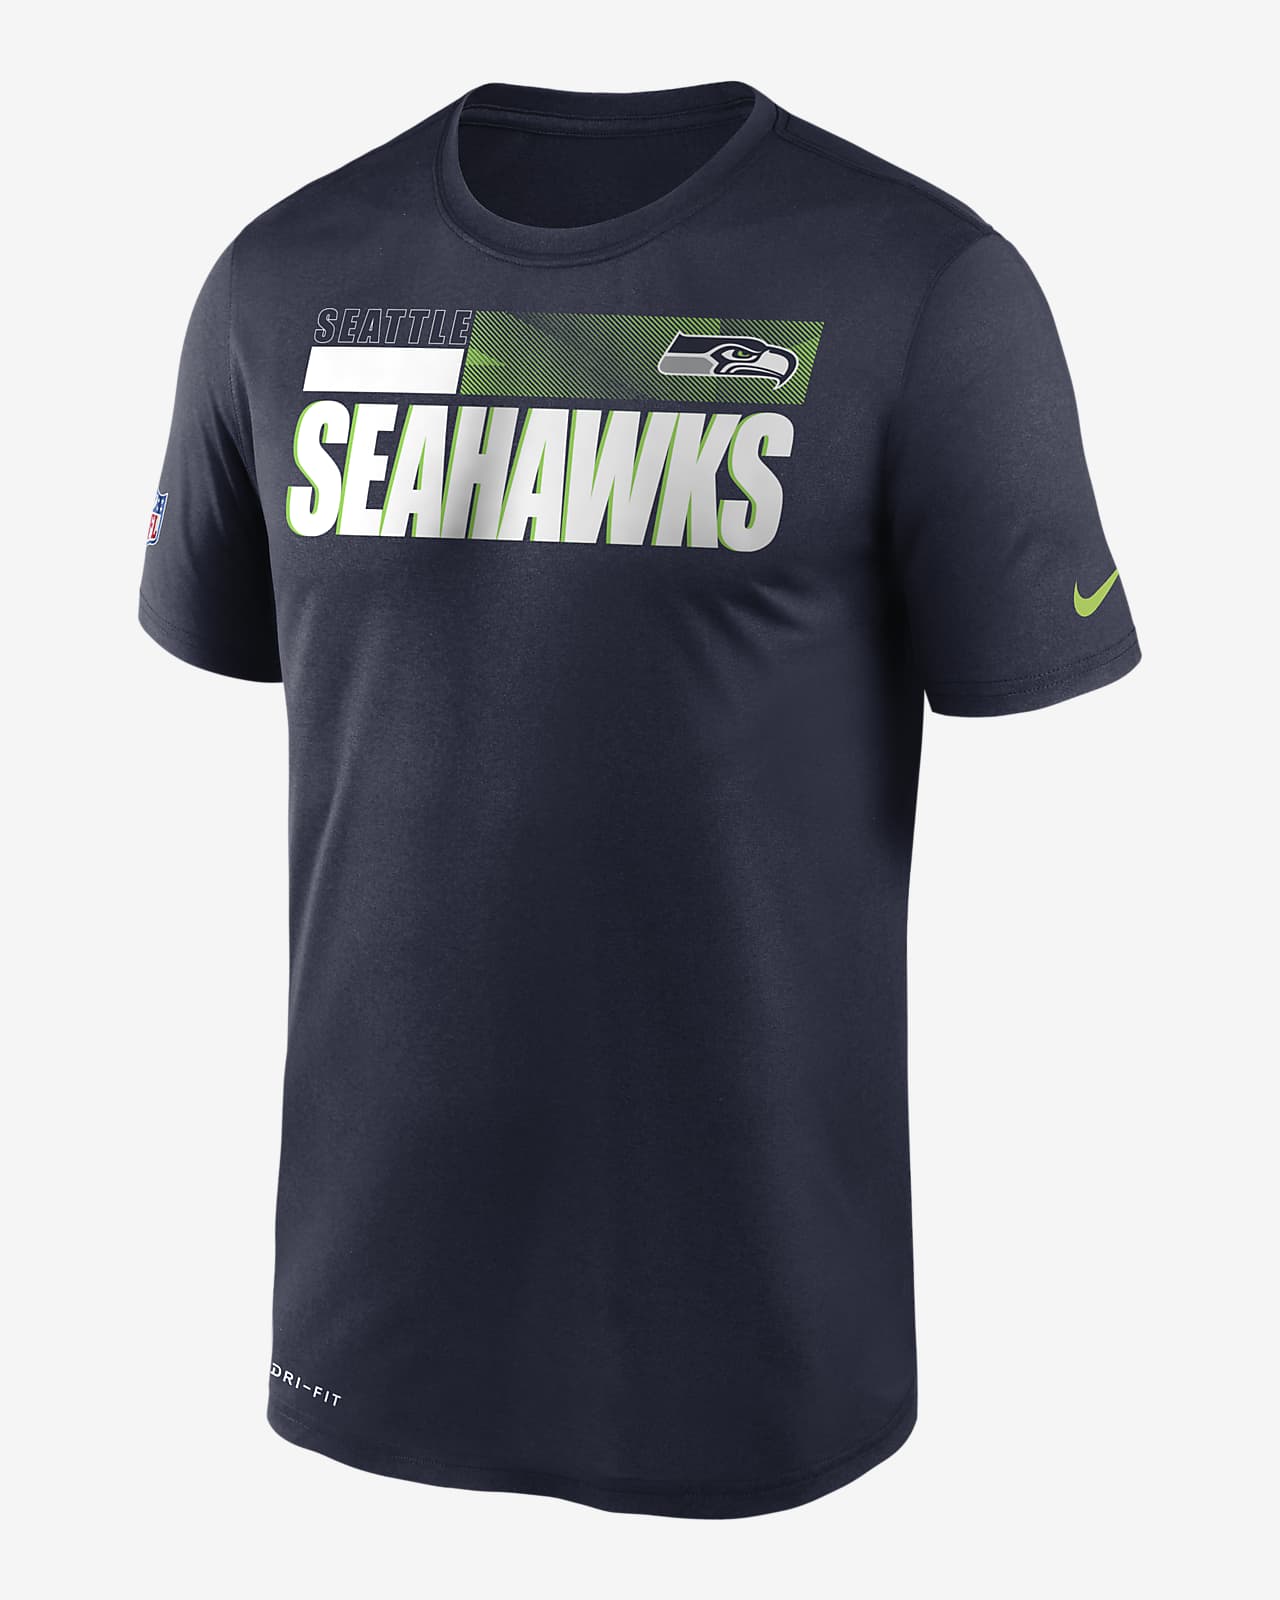 nike seahawks shirt